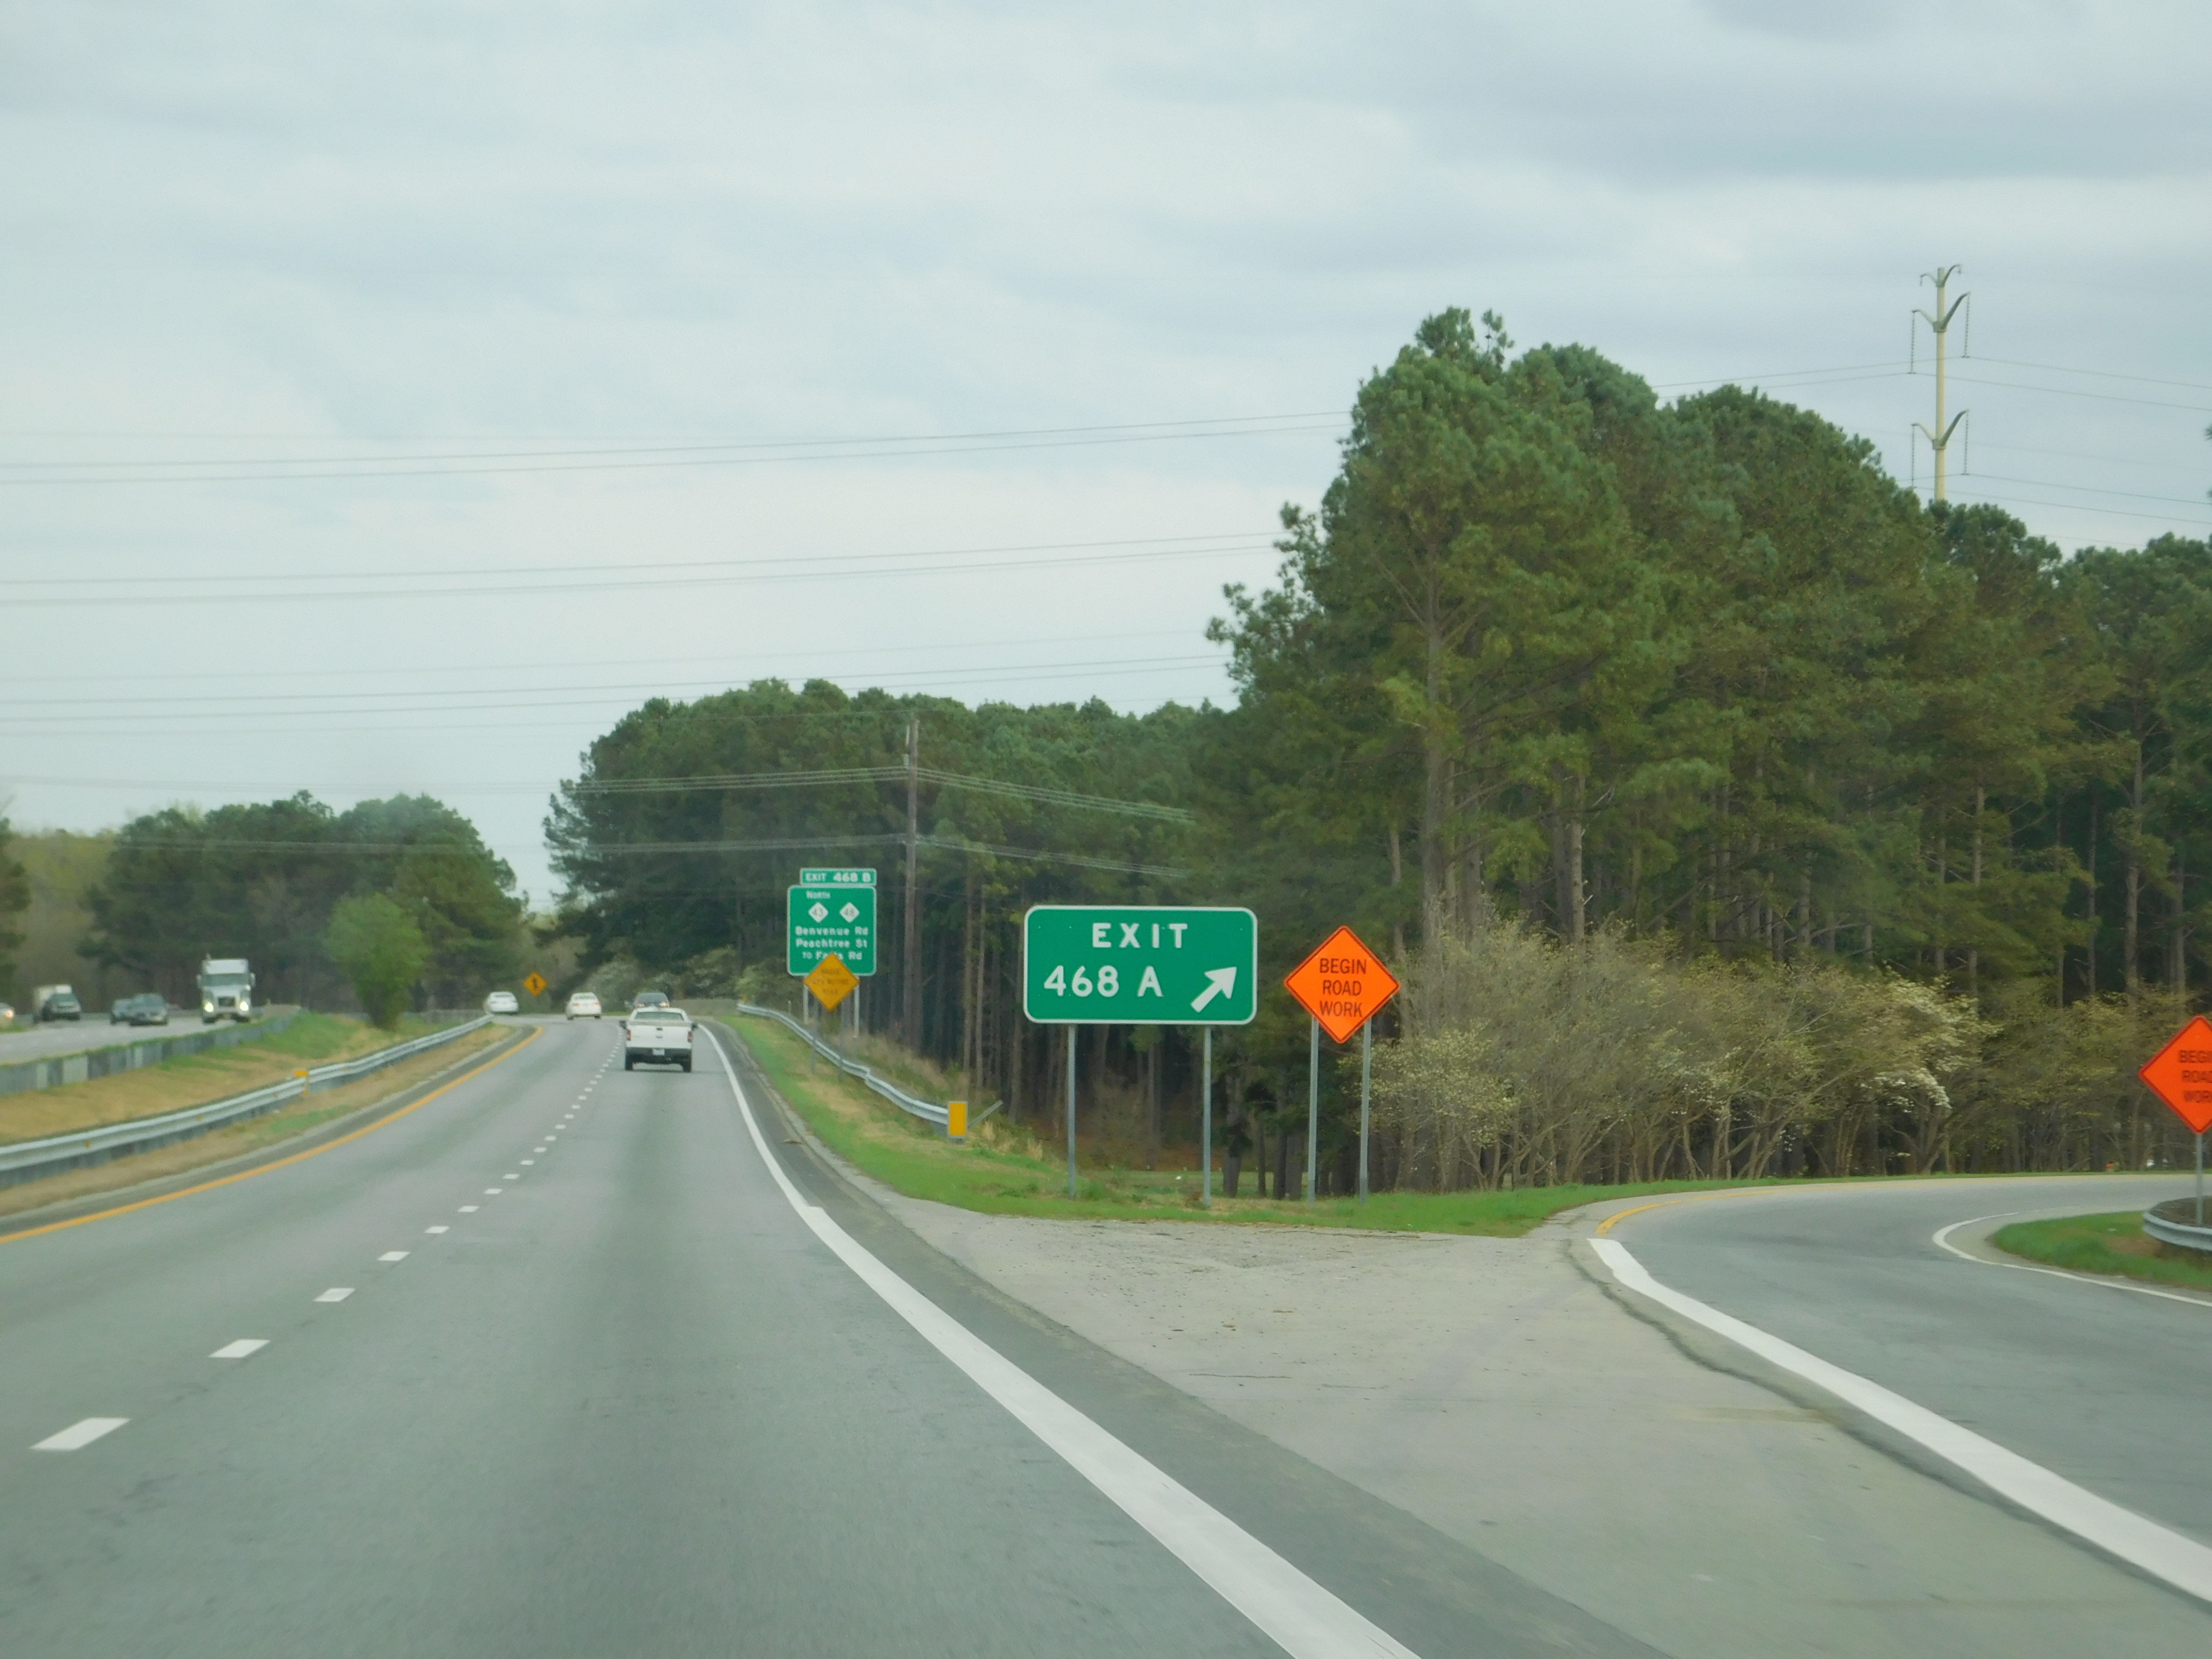 U.S. Route 64 - Wikipedia